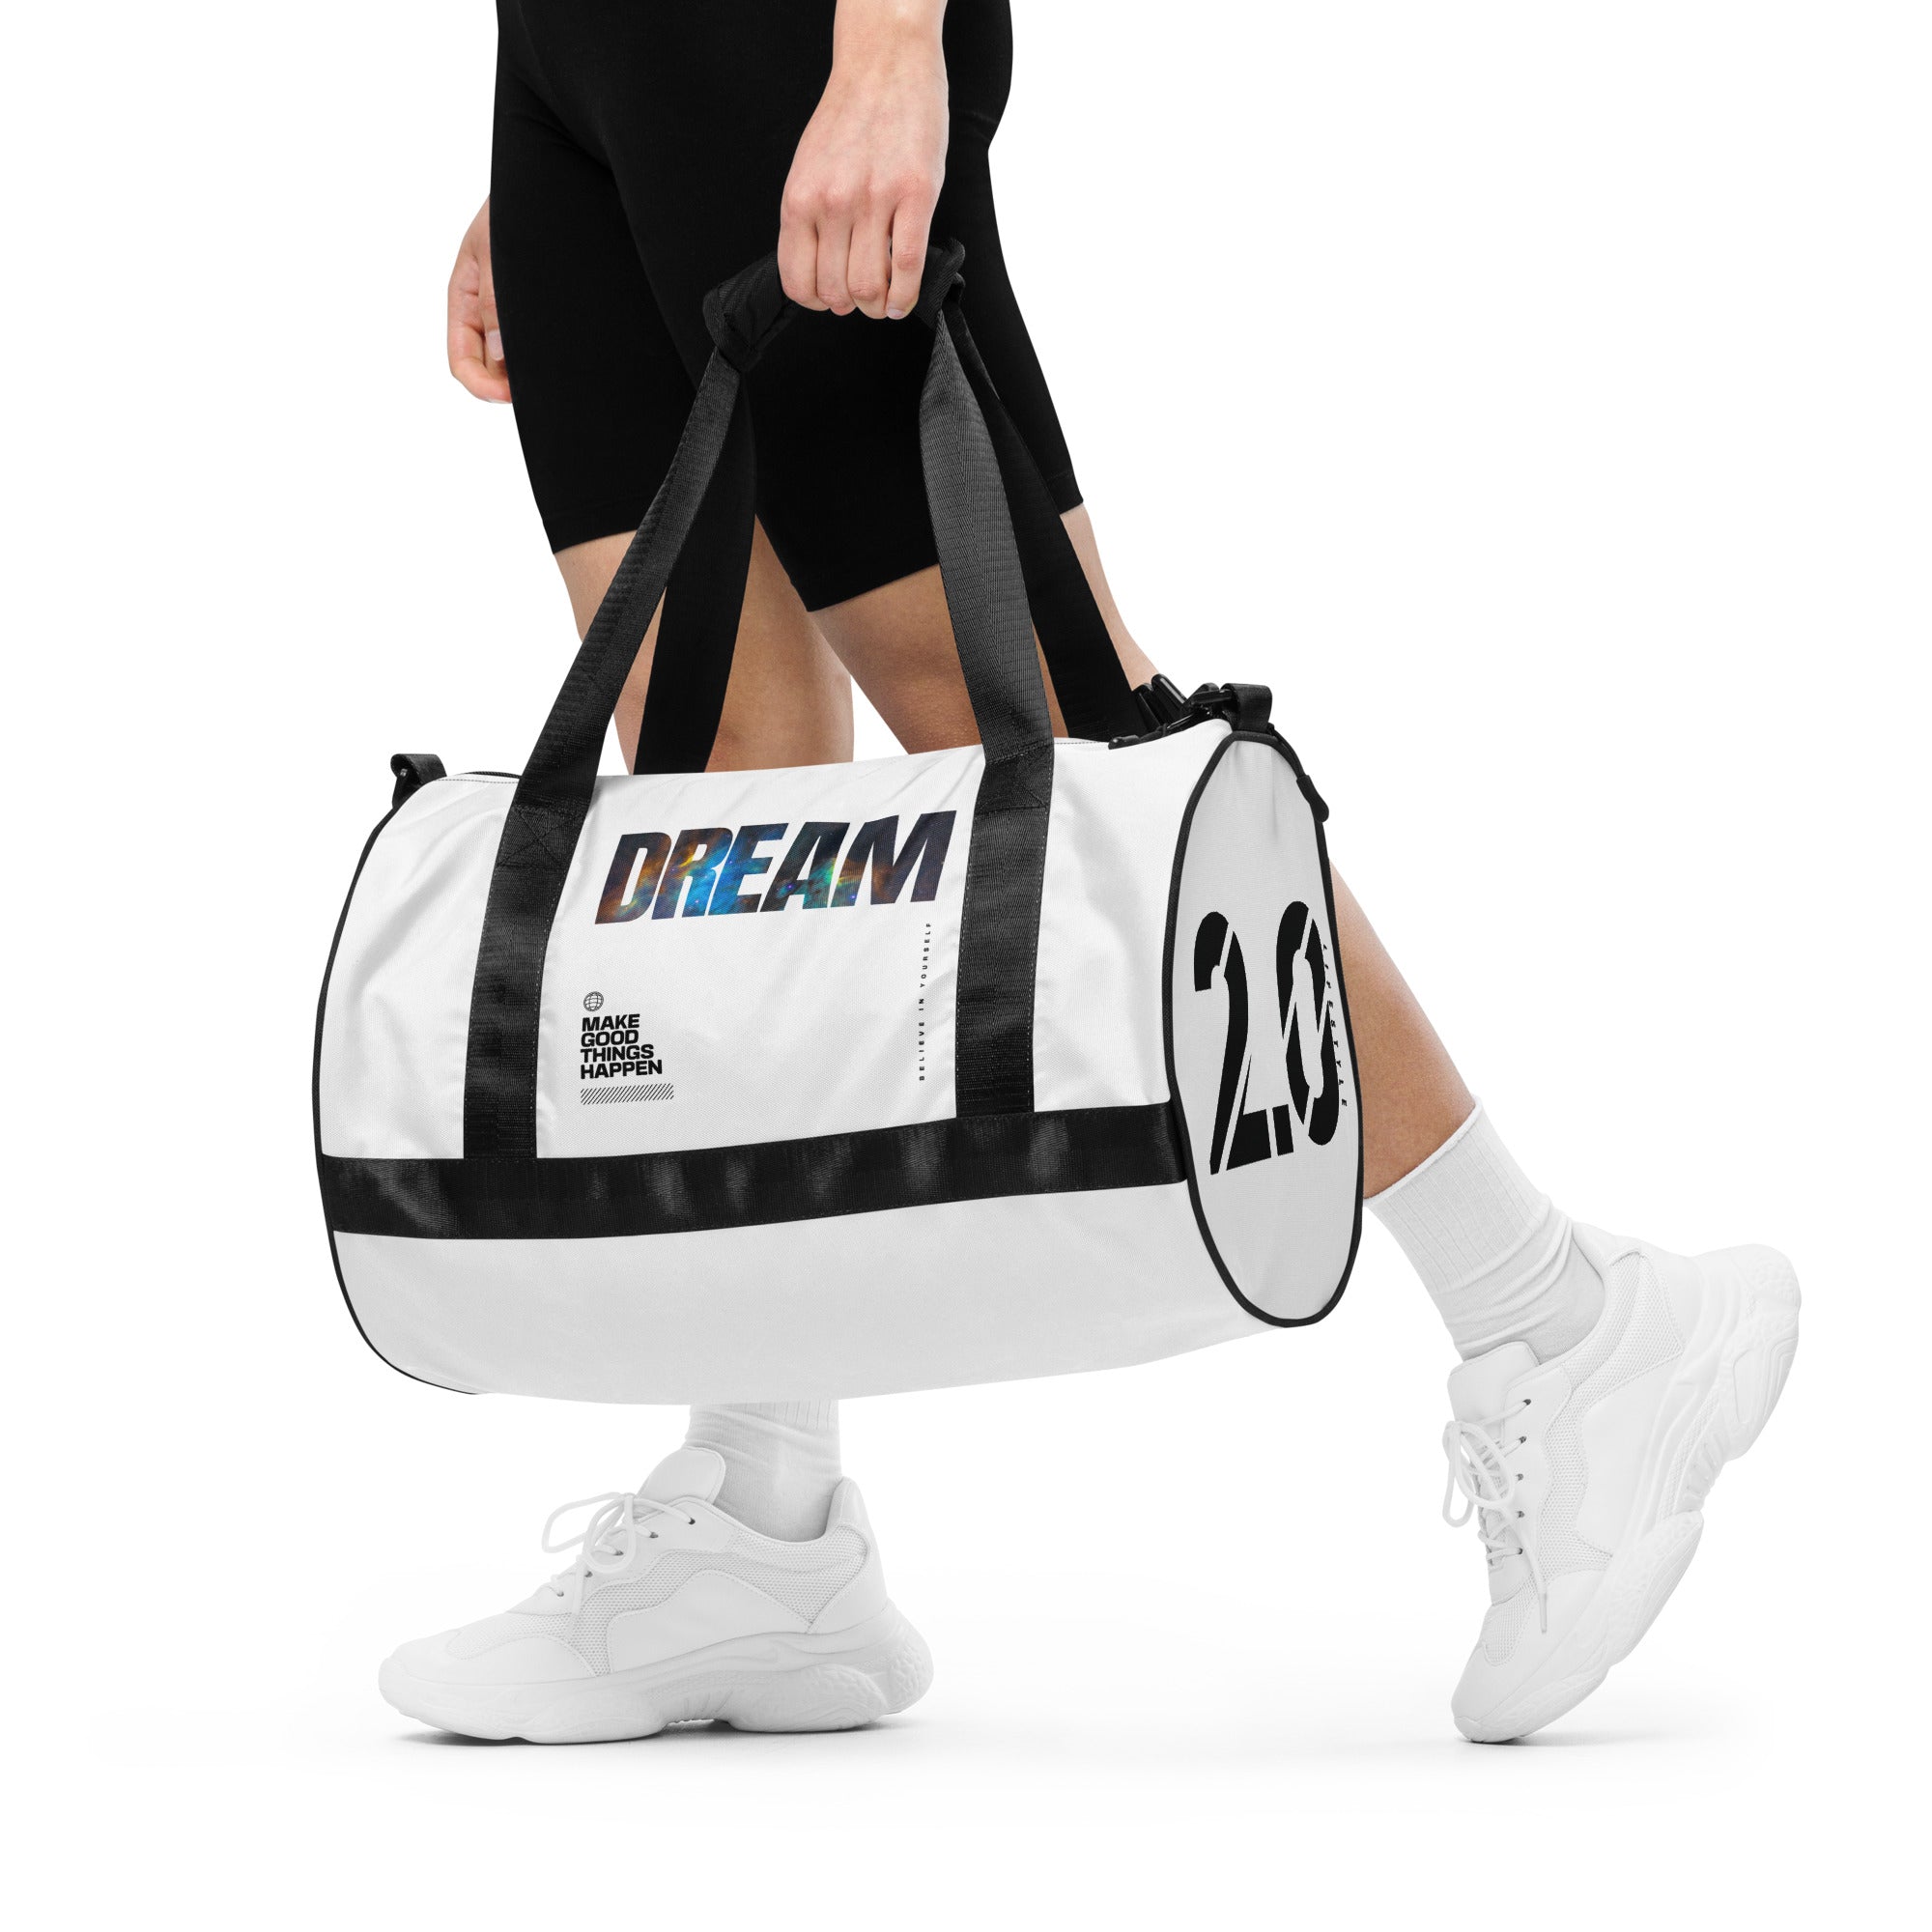 DREAM Gym bag